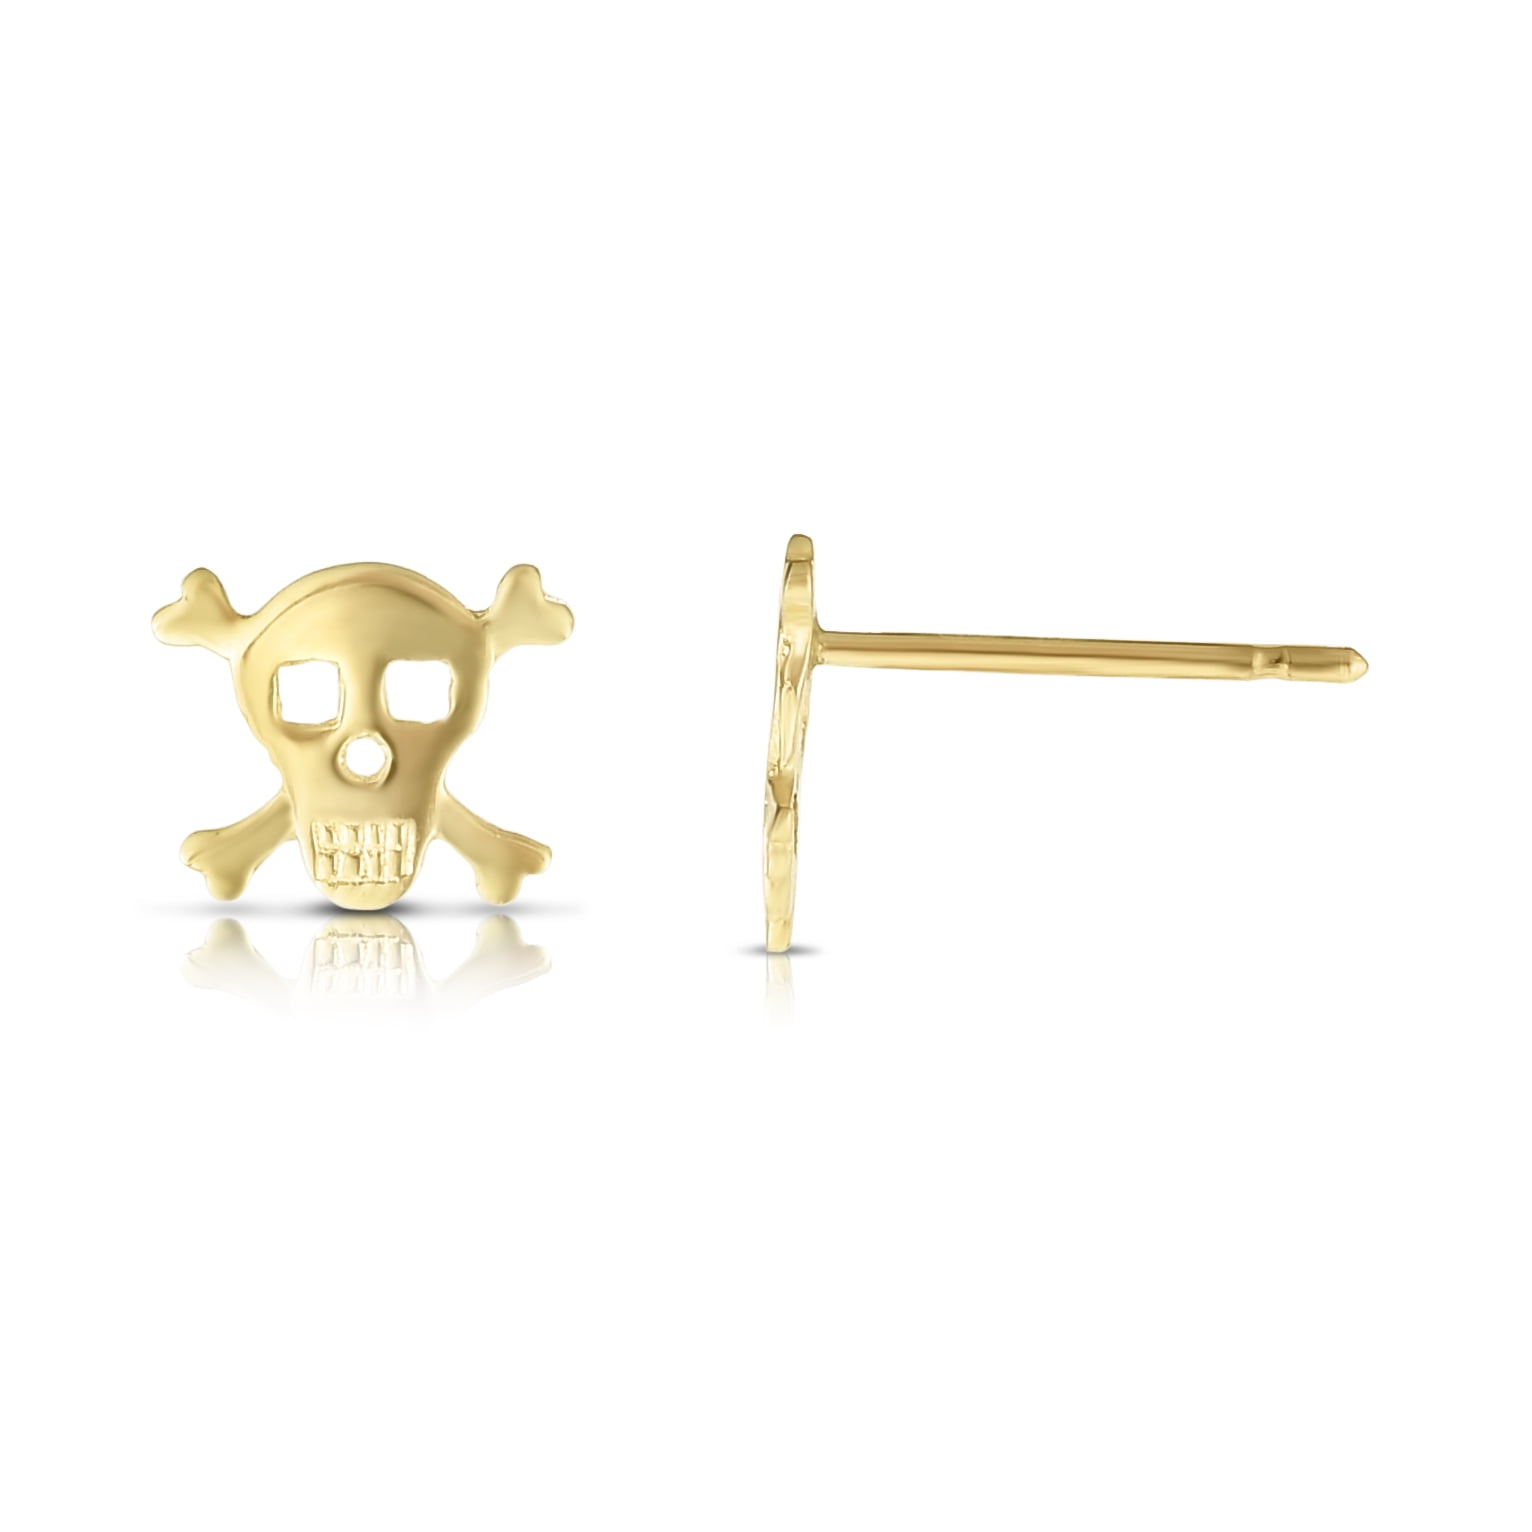 Skull Bone Skeleton Stone Stud Earrings Screw Back 14k Yellow Gold Tiny Light 